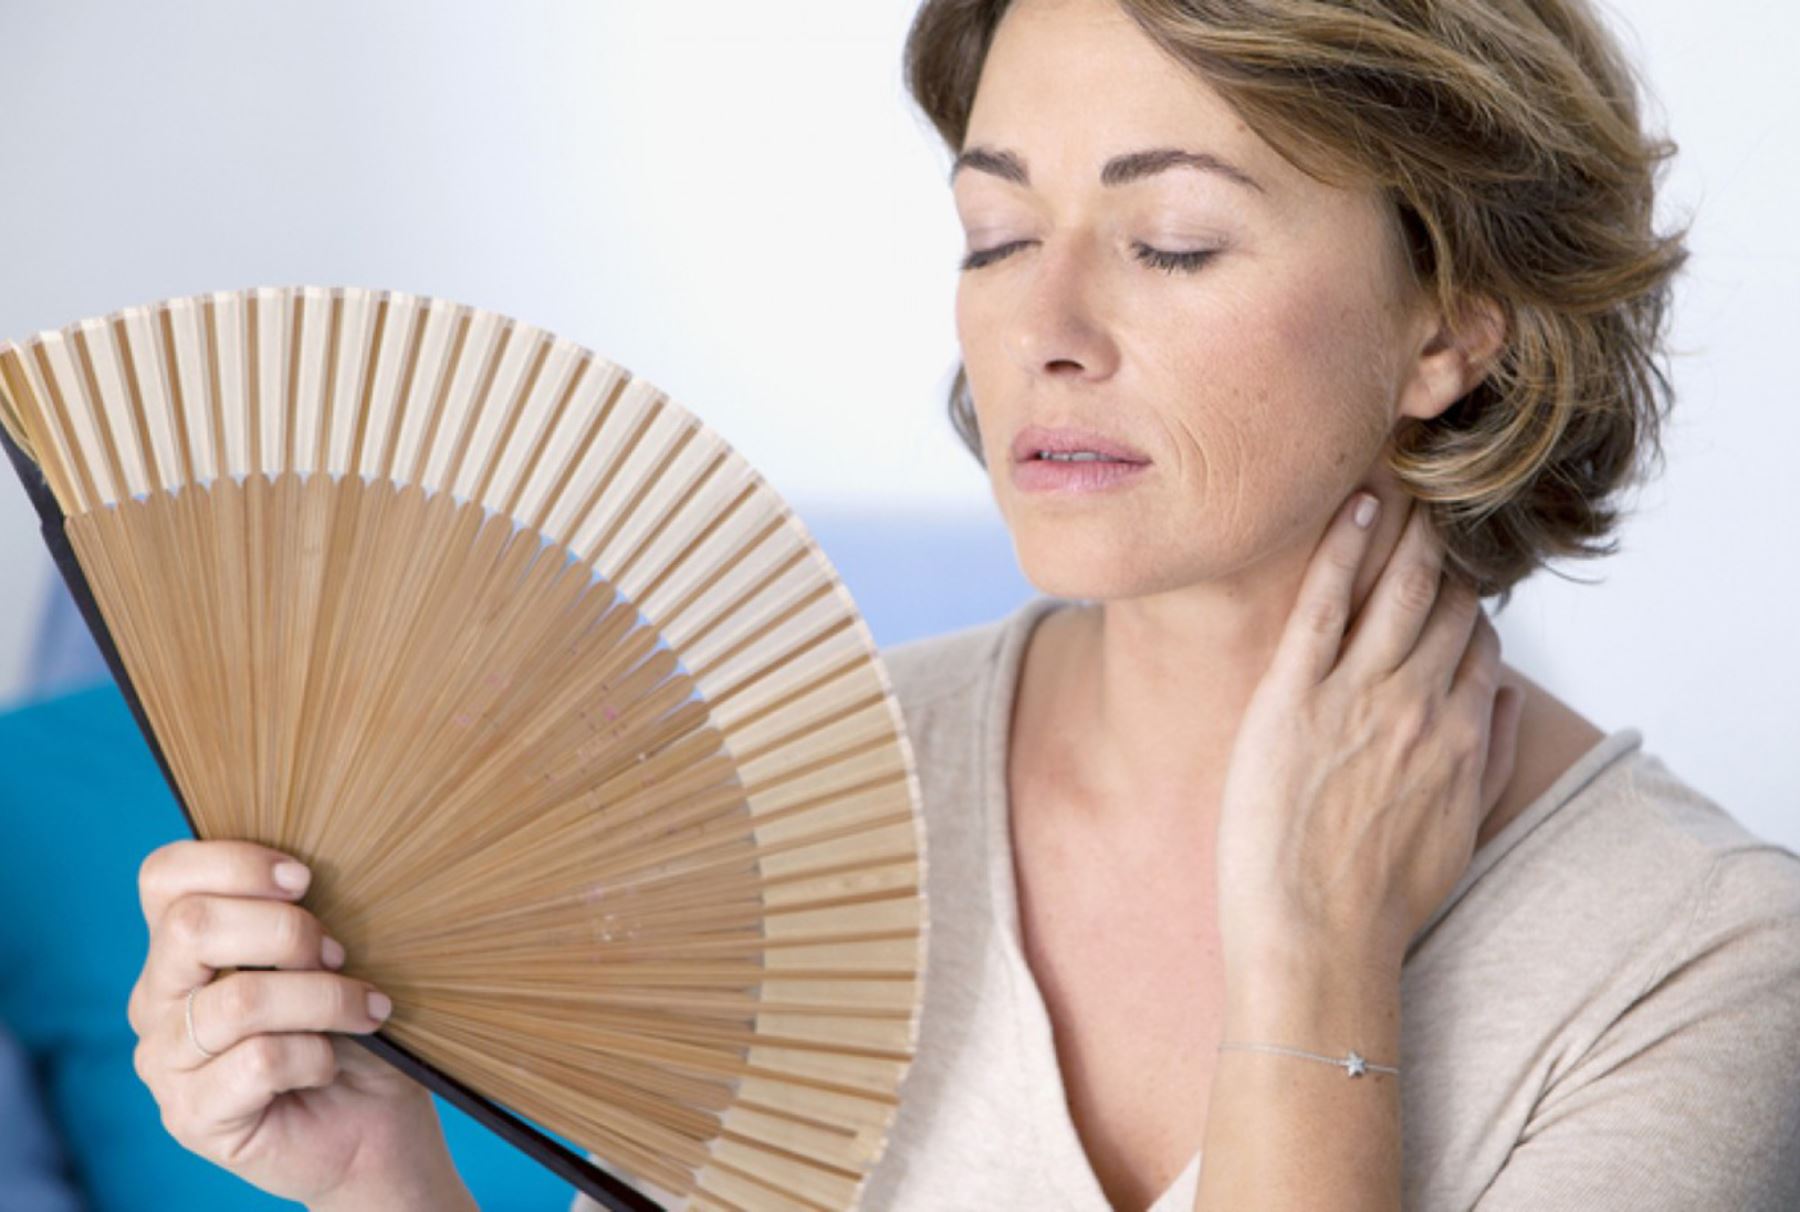 La menopausia: ¿cuándo llega y cómo prepararse?